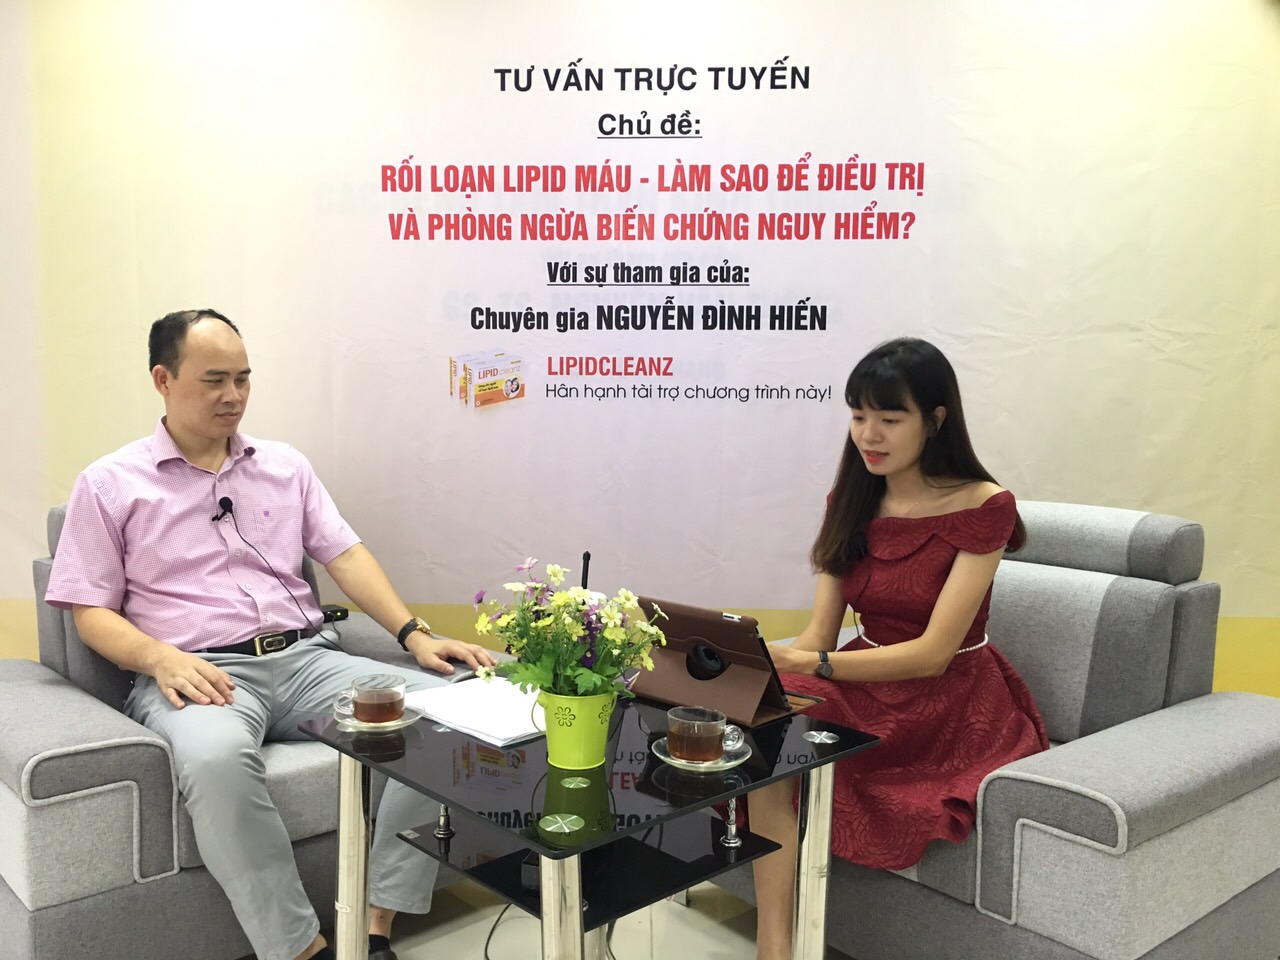 Giao lưu trực tuyến cùng chuyên gia Nguyễn Đình Hiến